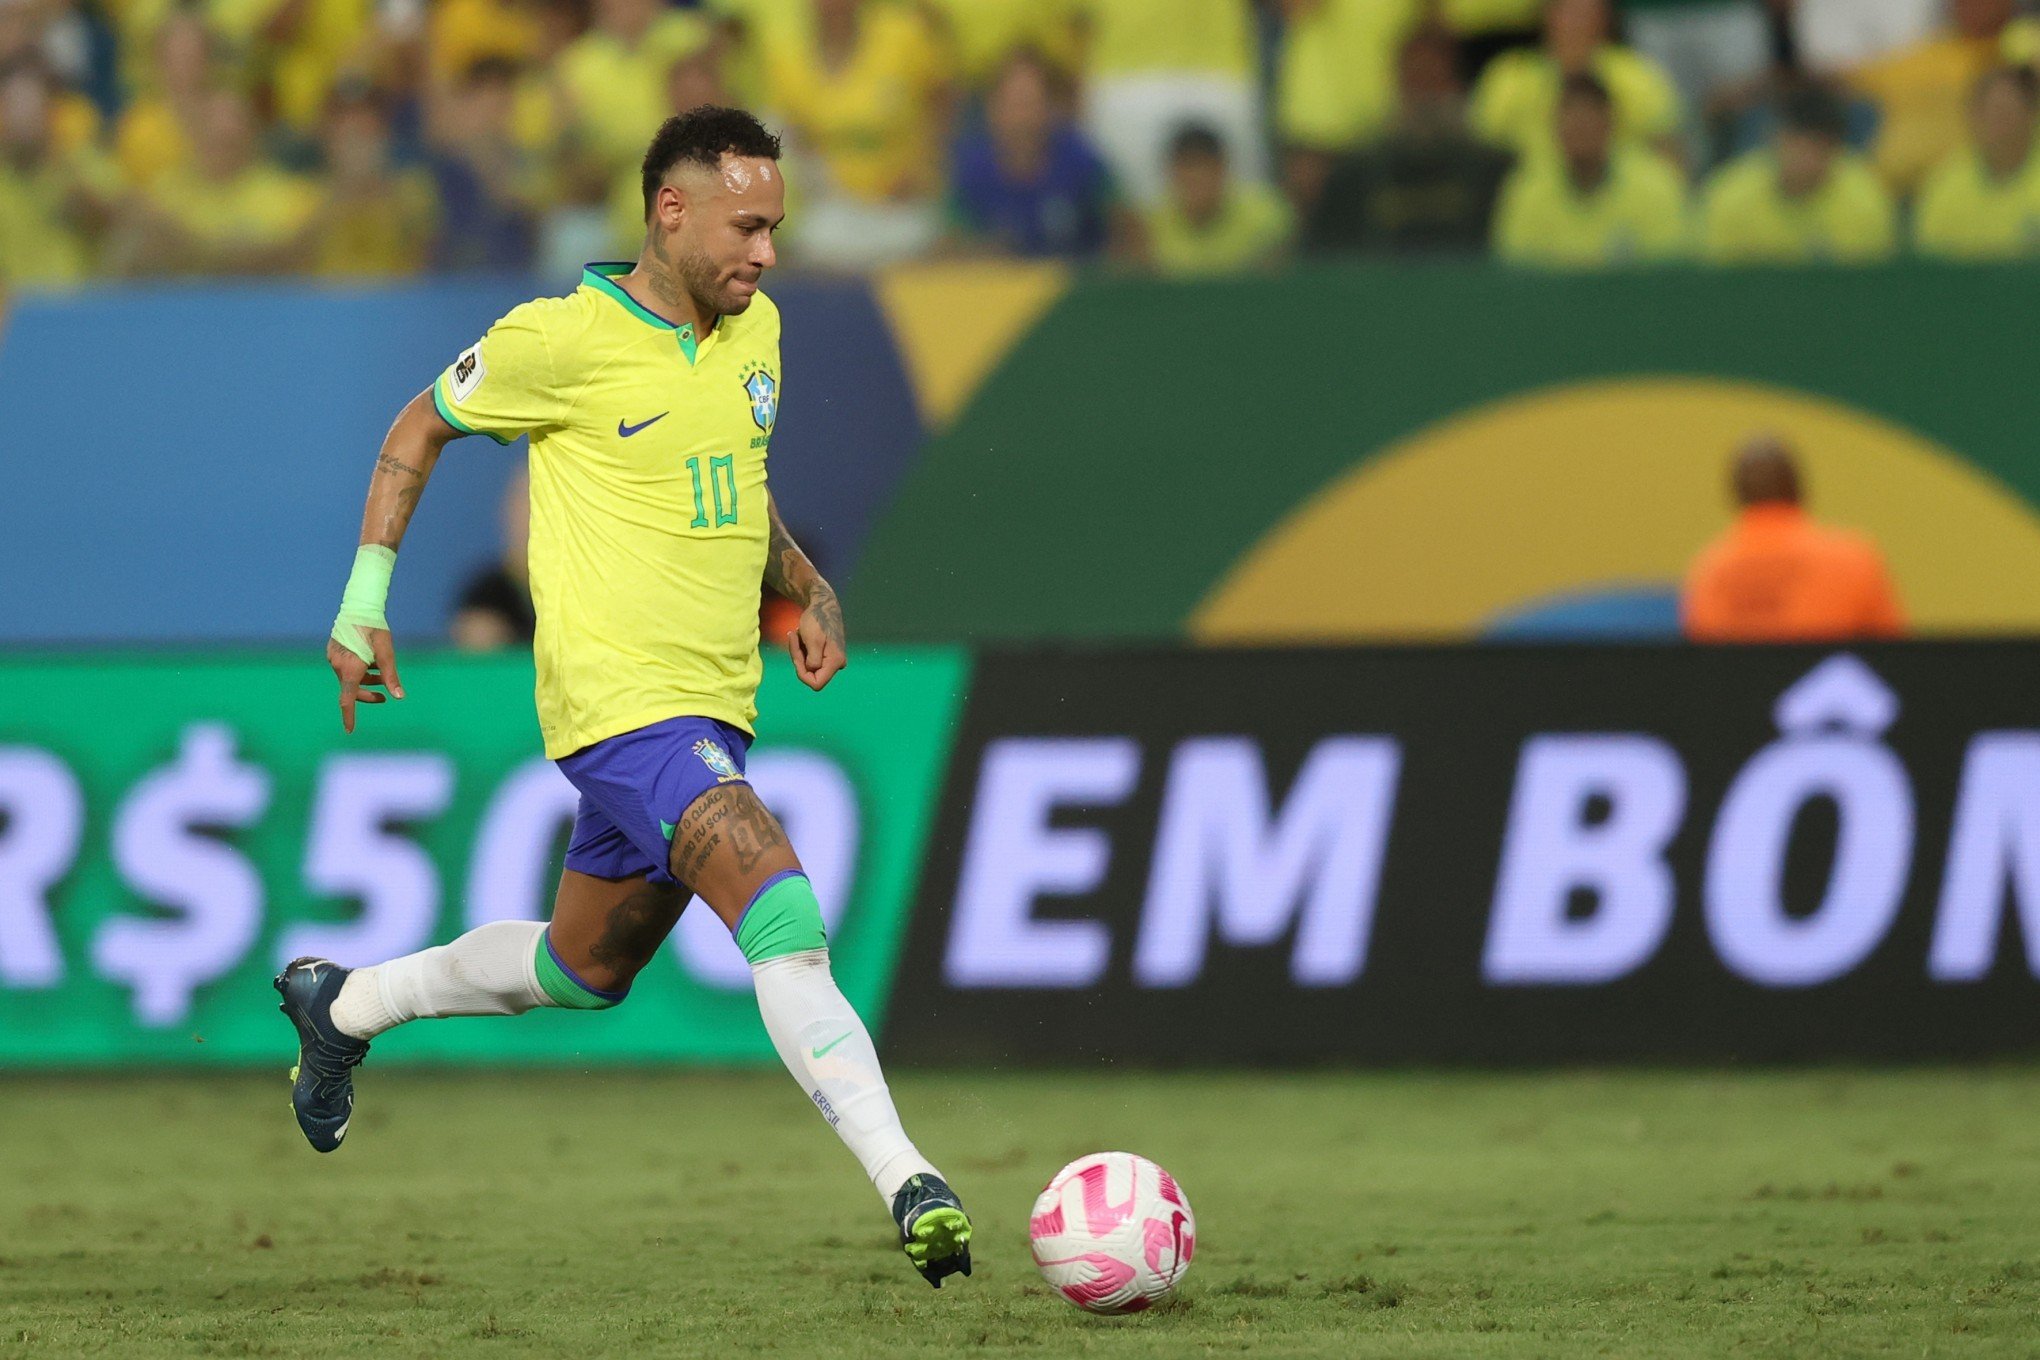 "Esse tipo de atitude eu condeno", diz Neymar após ser atingido por pipoca; veja o momento